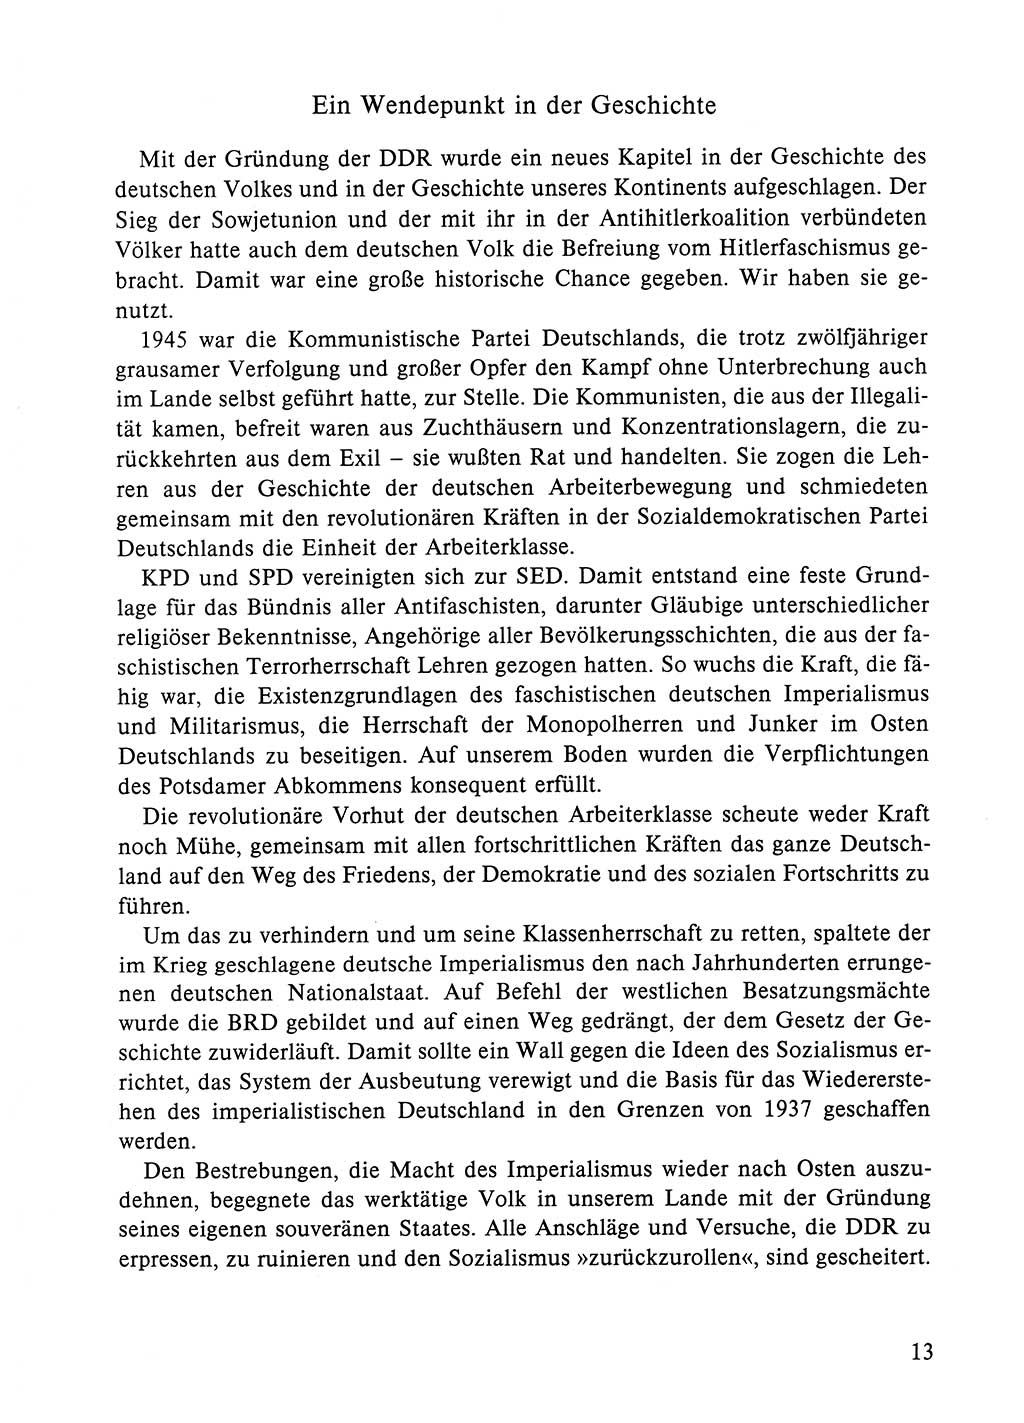 Dokumente der Sozialistischen Einheitspartei Deutschlands (SED) [Deutsche Demokratische Republik (DDR)] 1984-1985, Seite 13 (Dok. SED DDR 1984-1985, S. 13)